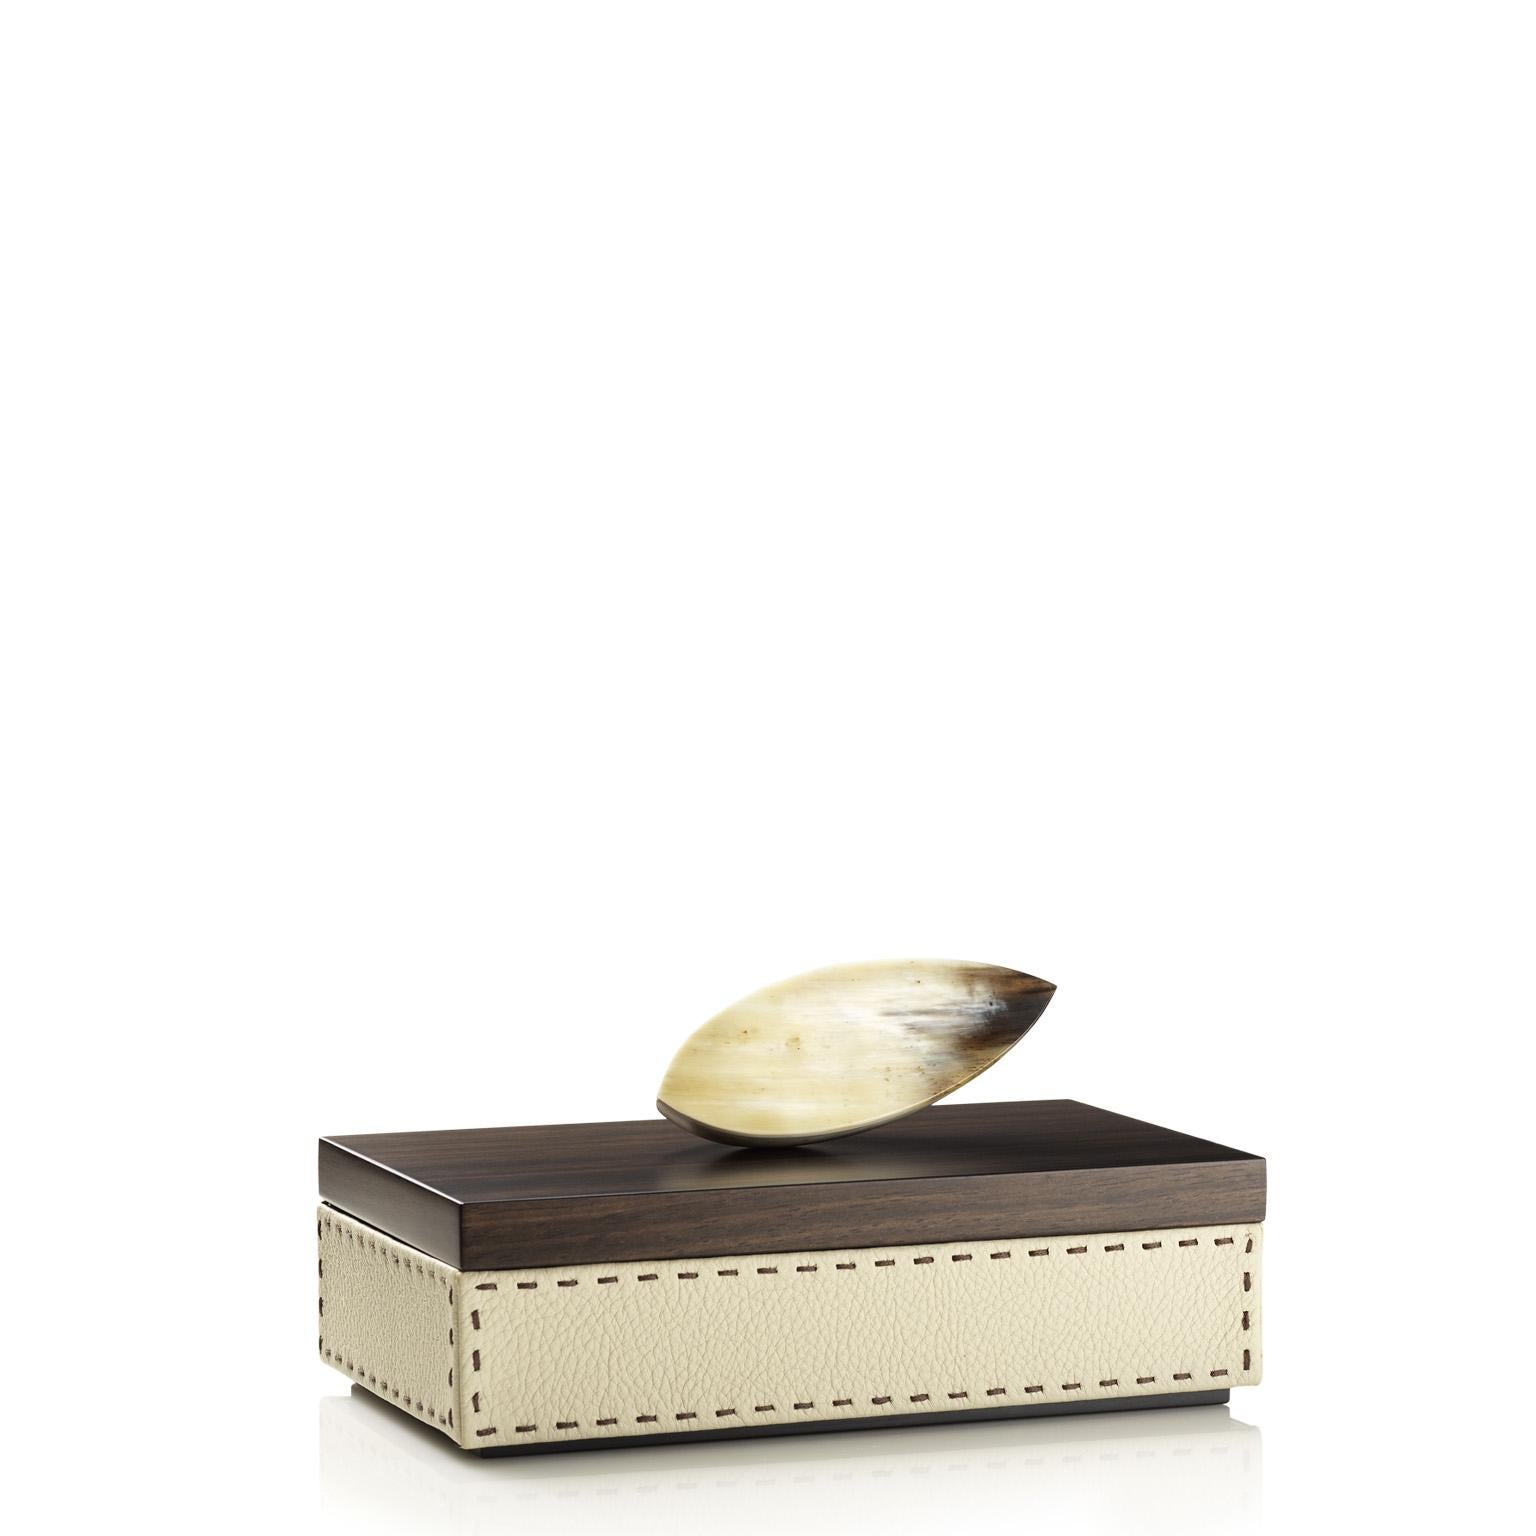 Capricia Box in Pebbled Leather with Handle in Corno Italiano, Mod. 4473 In New Condition For Sale In Recanati, Macerata